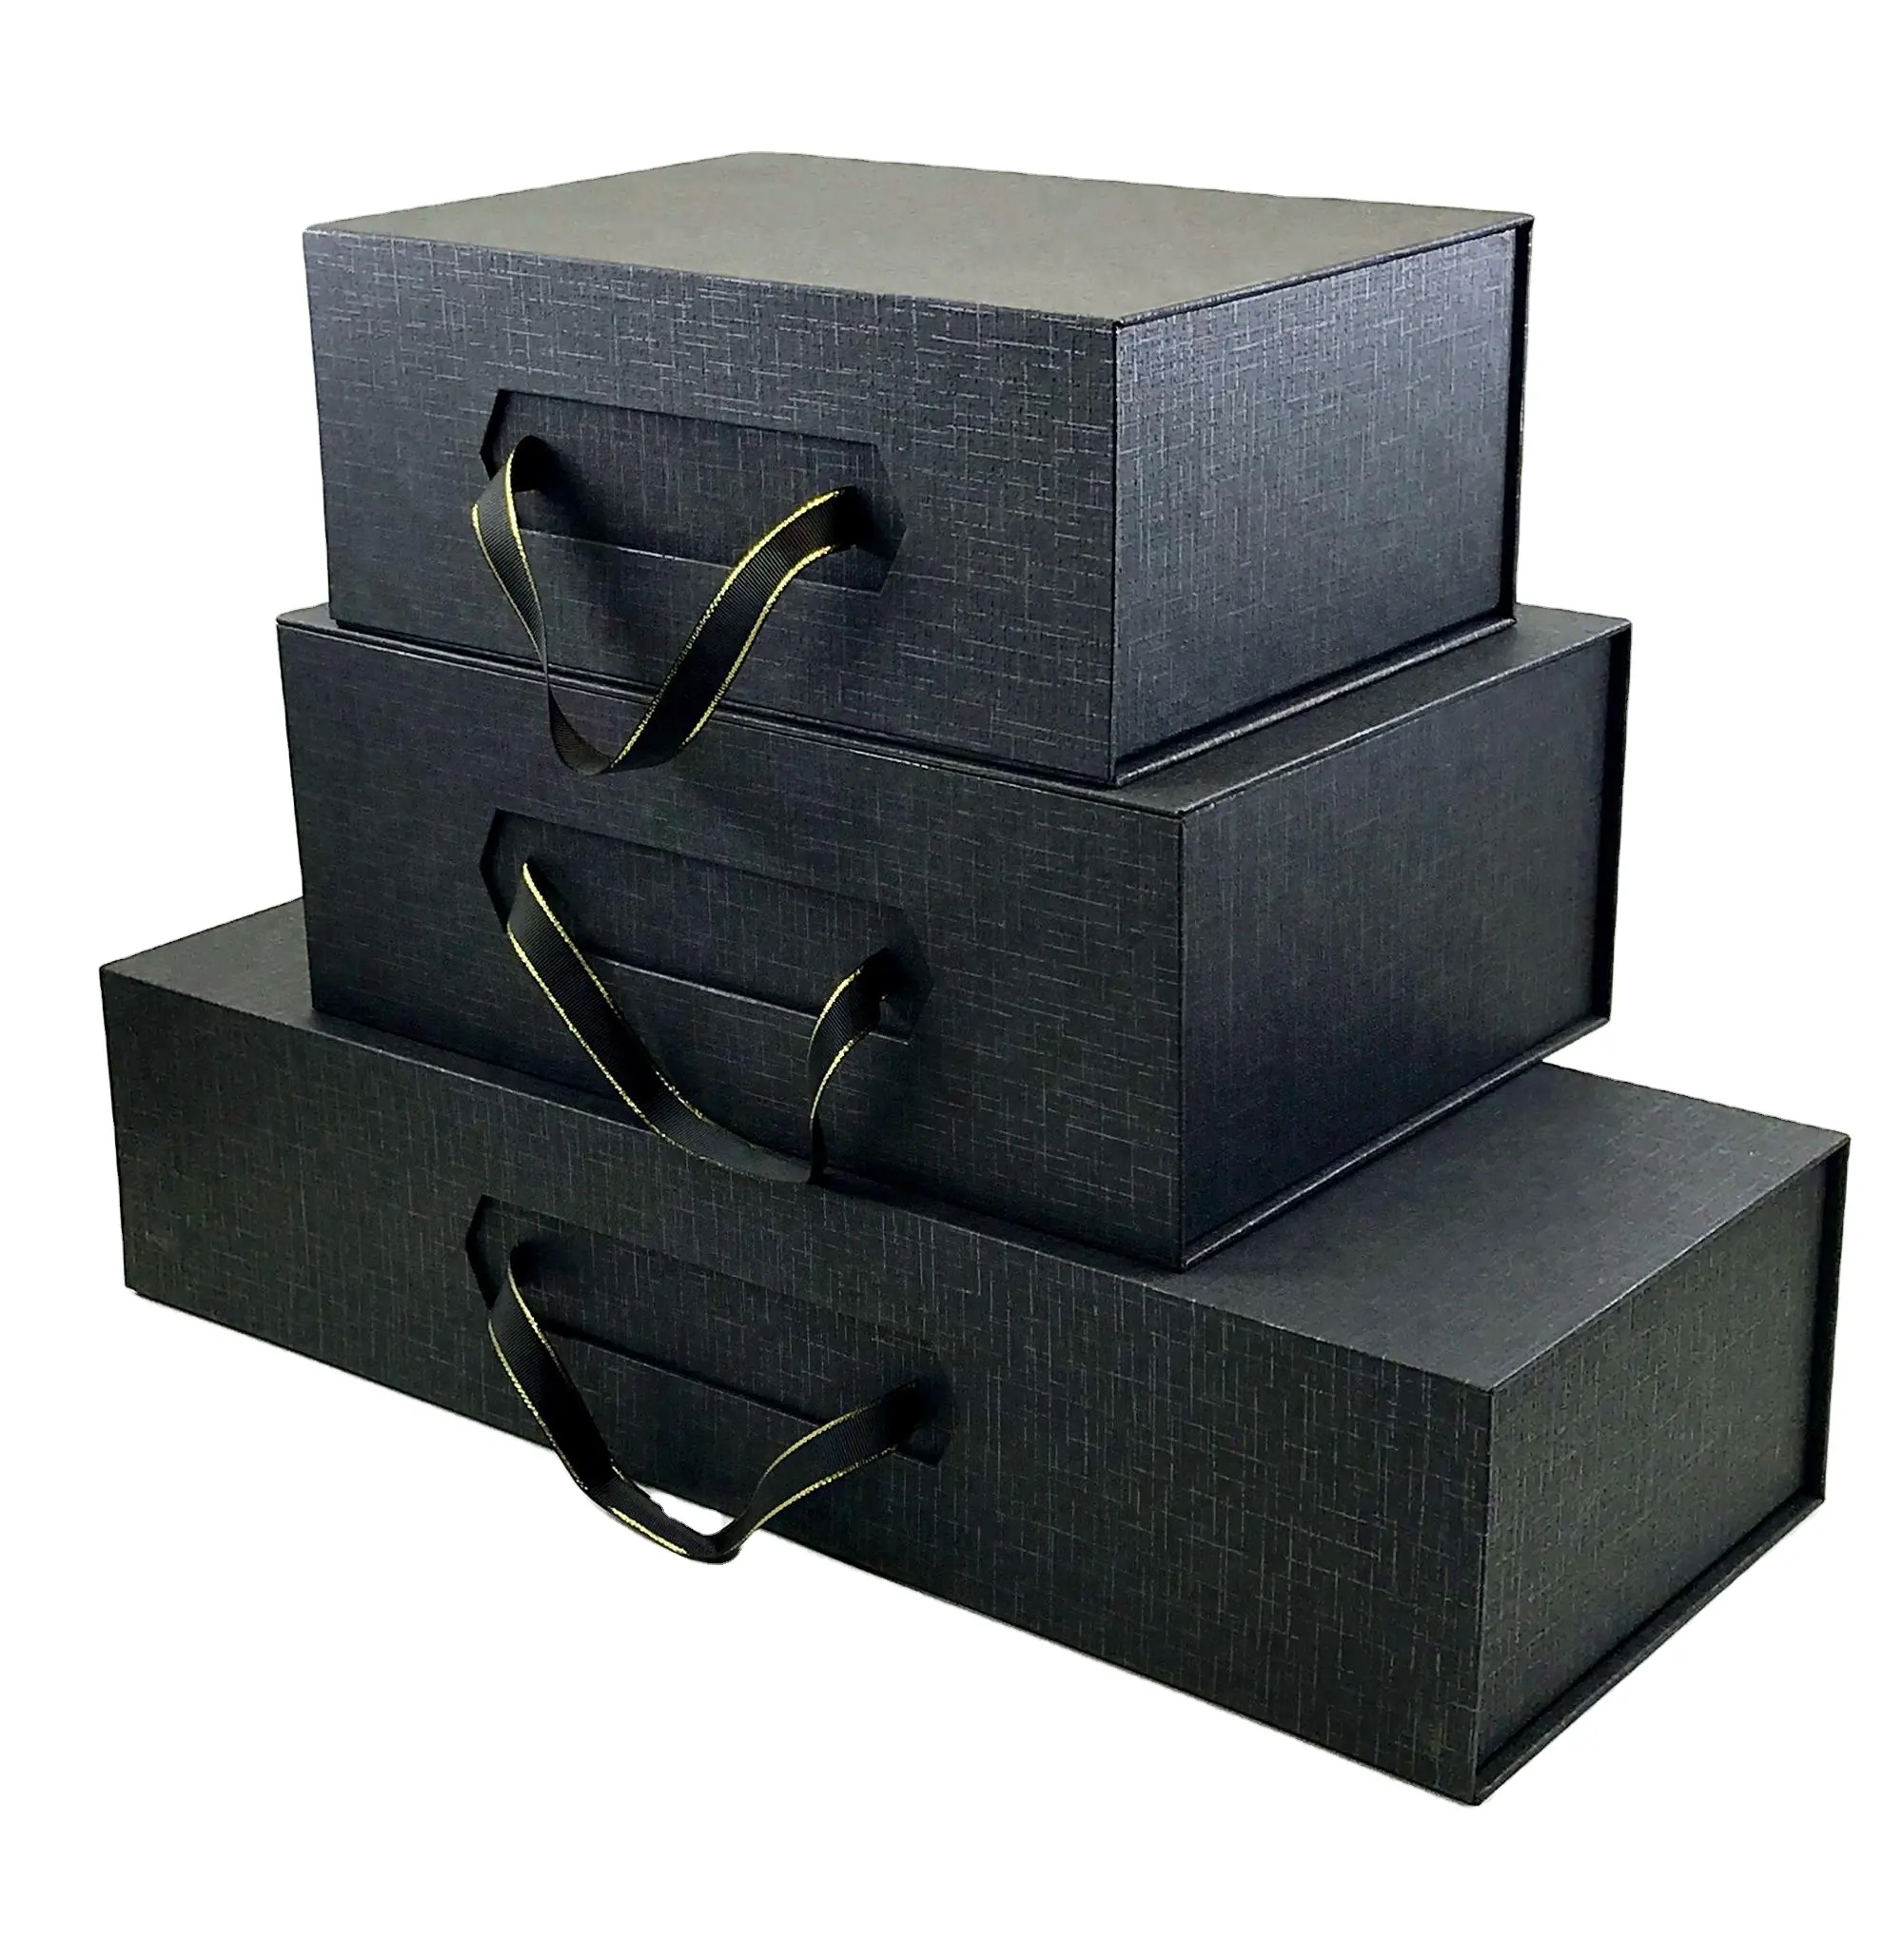 กล่องกระดาษแม่เหล็กสีดำด้านหรูหรามีด้ามจับริบบิ้น,กล่องบรรจุภัณฑ์รองเท้า